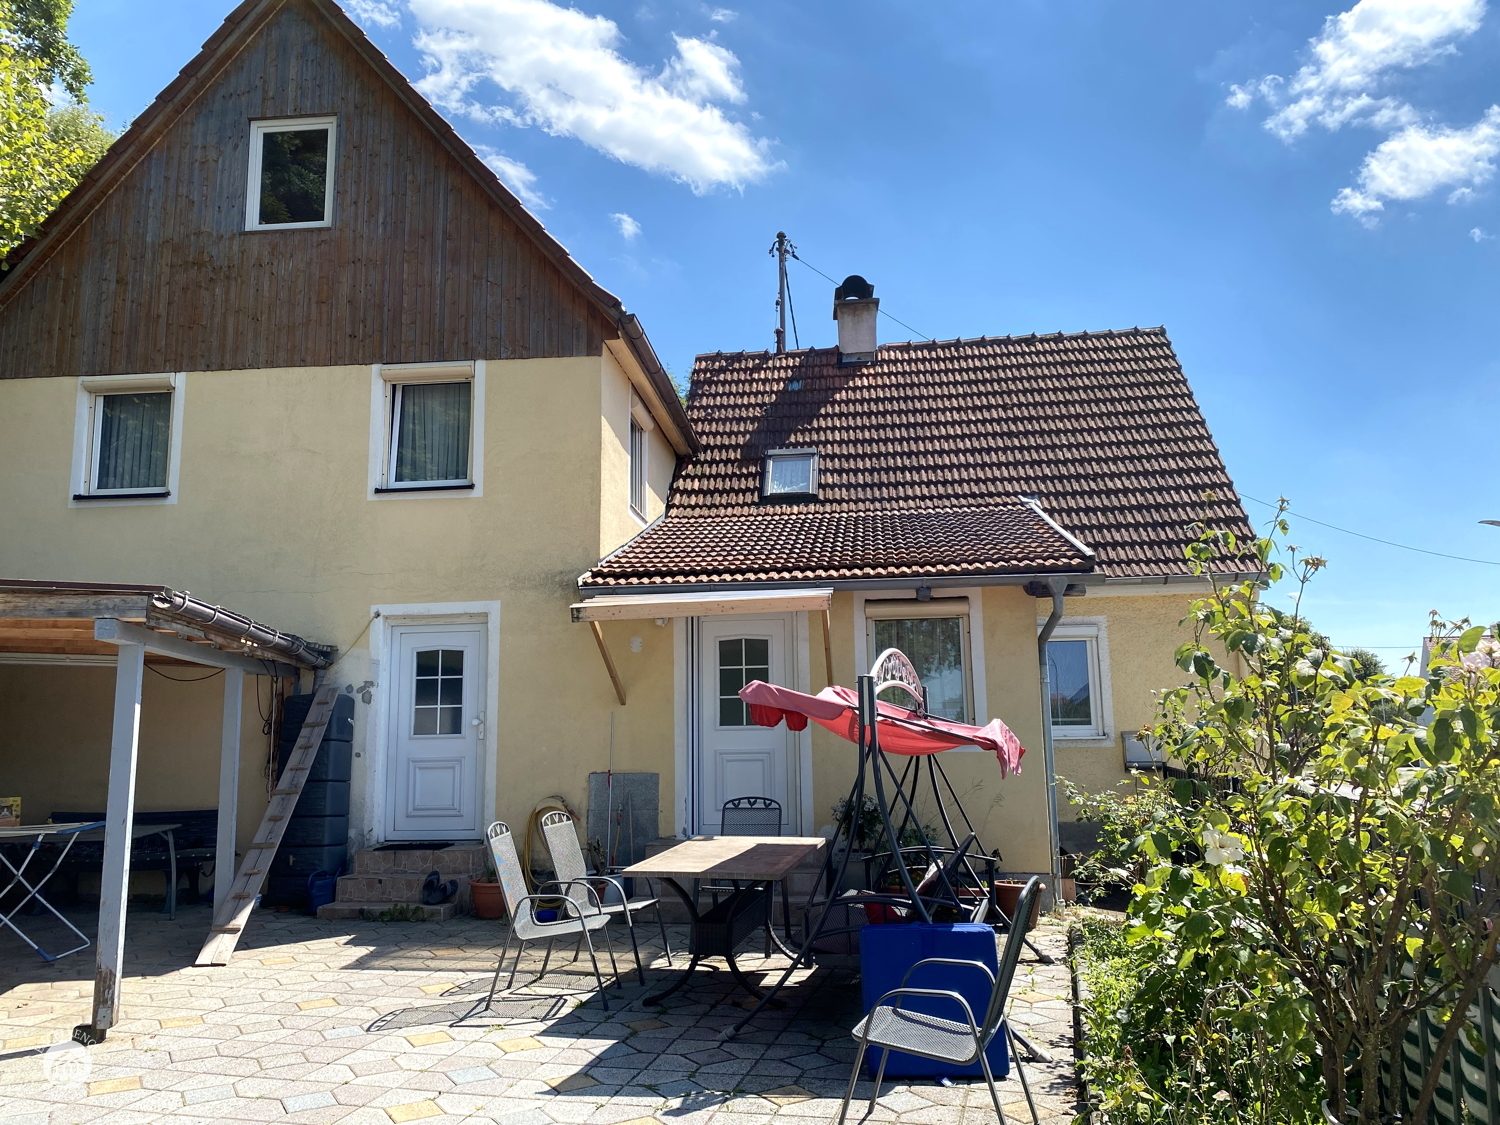 Immobilienangebot - Münsterhausen - Alle - Einfamilienhaus mit viel Potential, perfekt für Familien